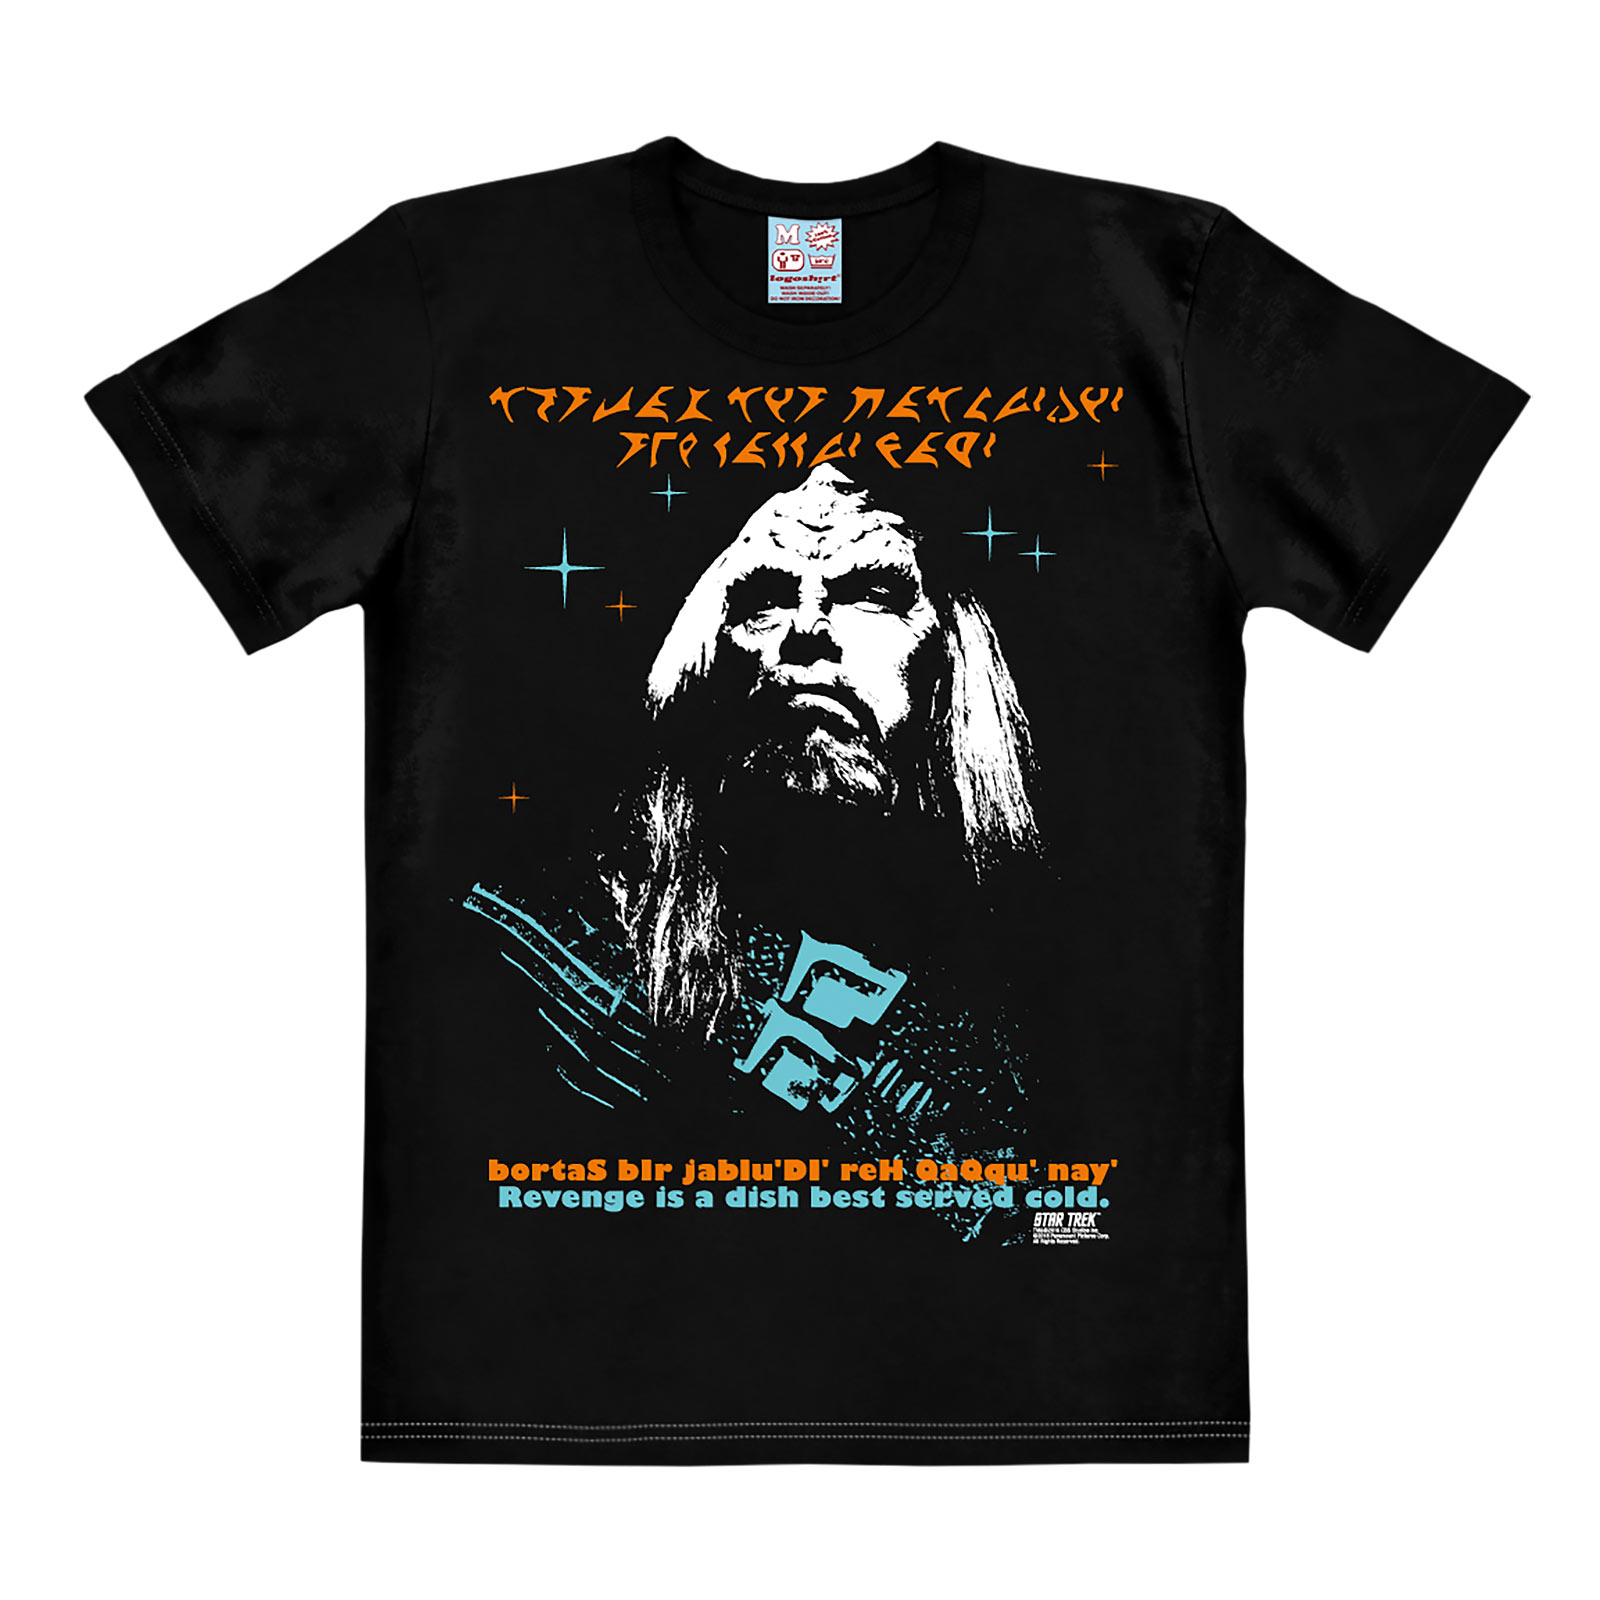 Star Trek - Revenge of the Klingons T-Shirt black